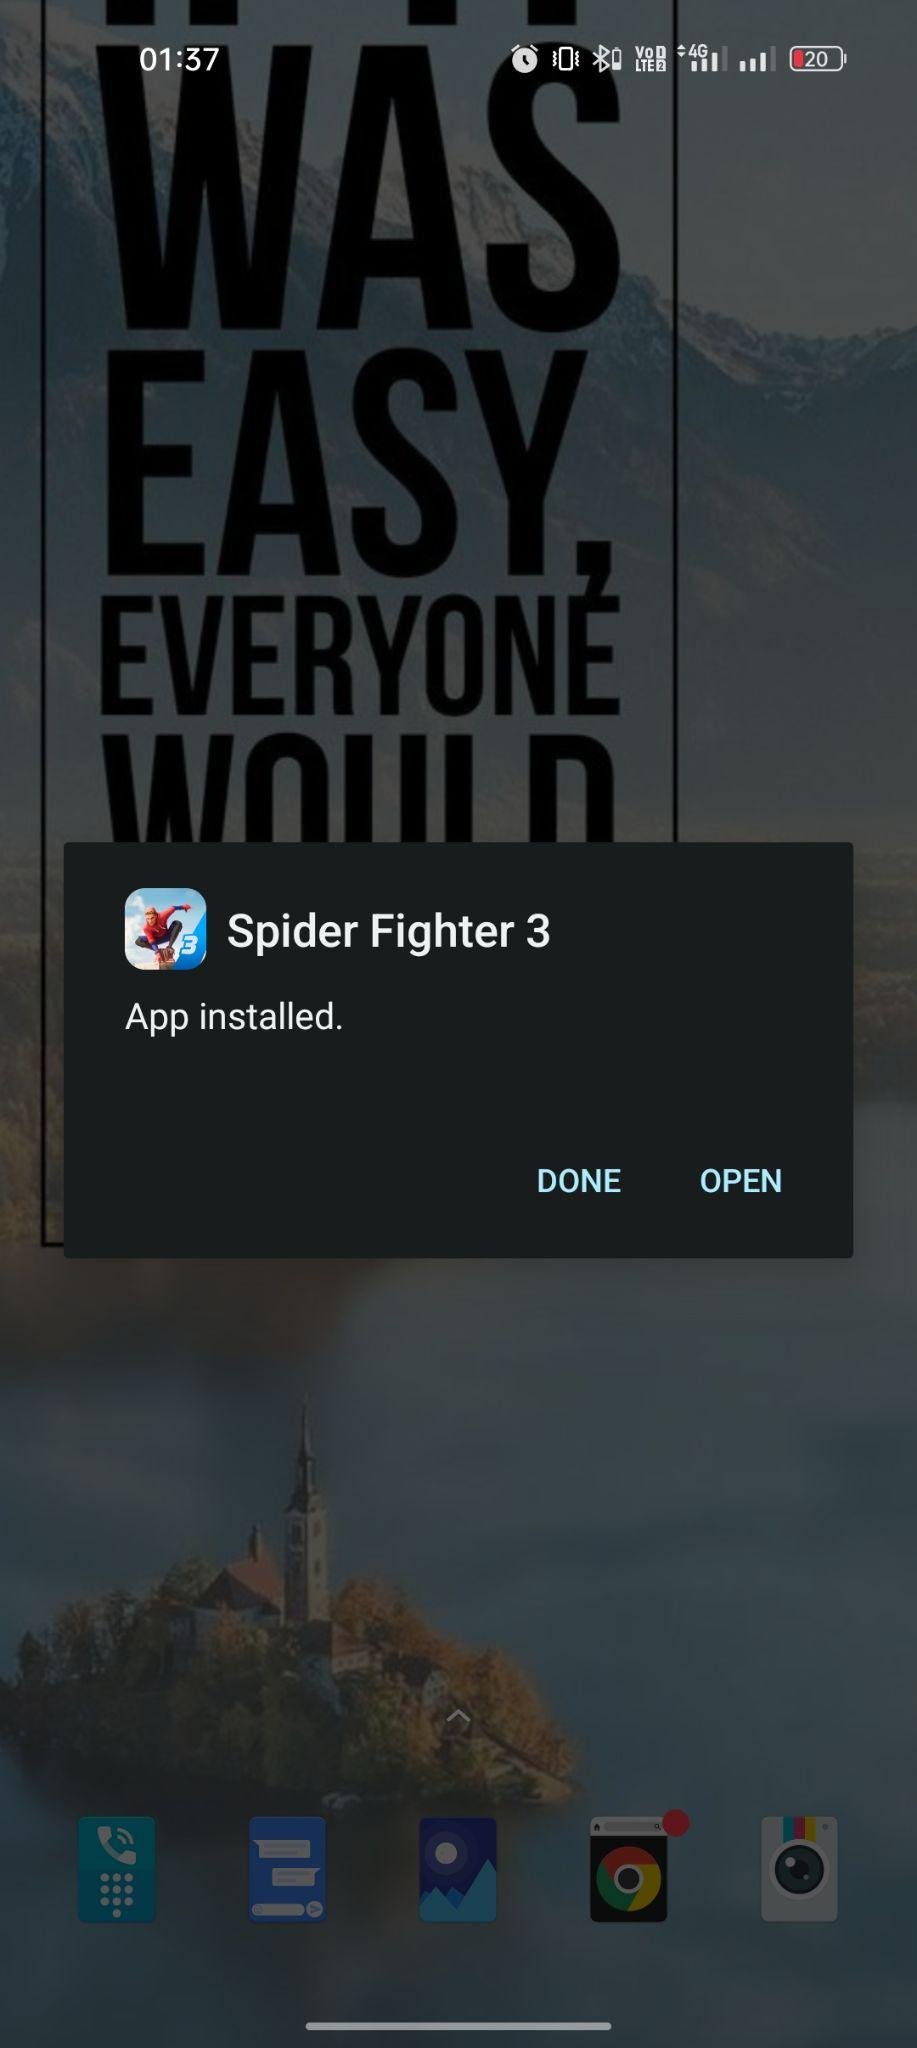 Spider Fighter 3 apk installed